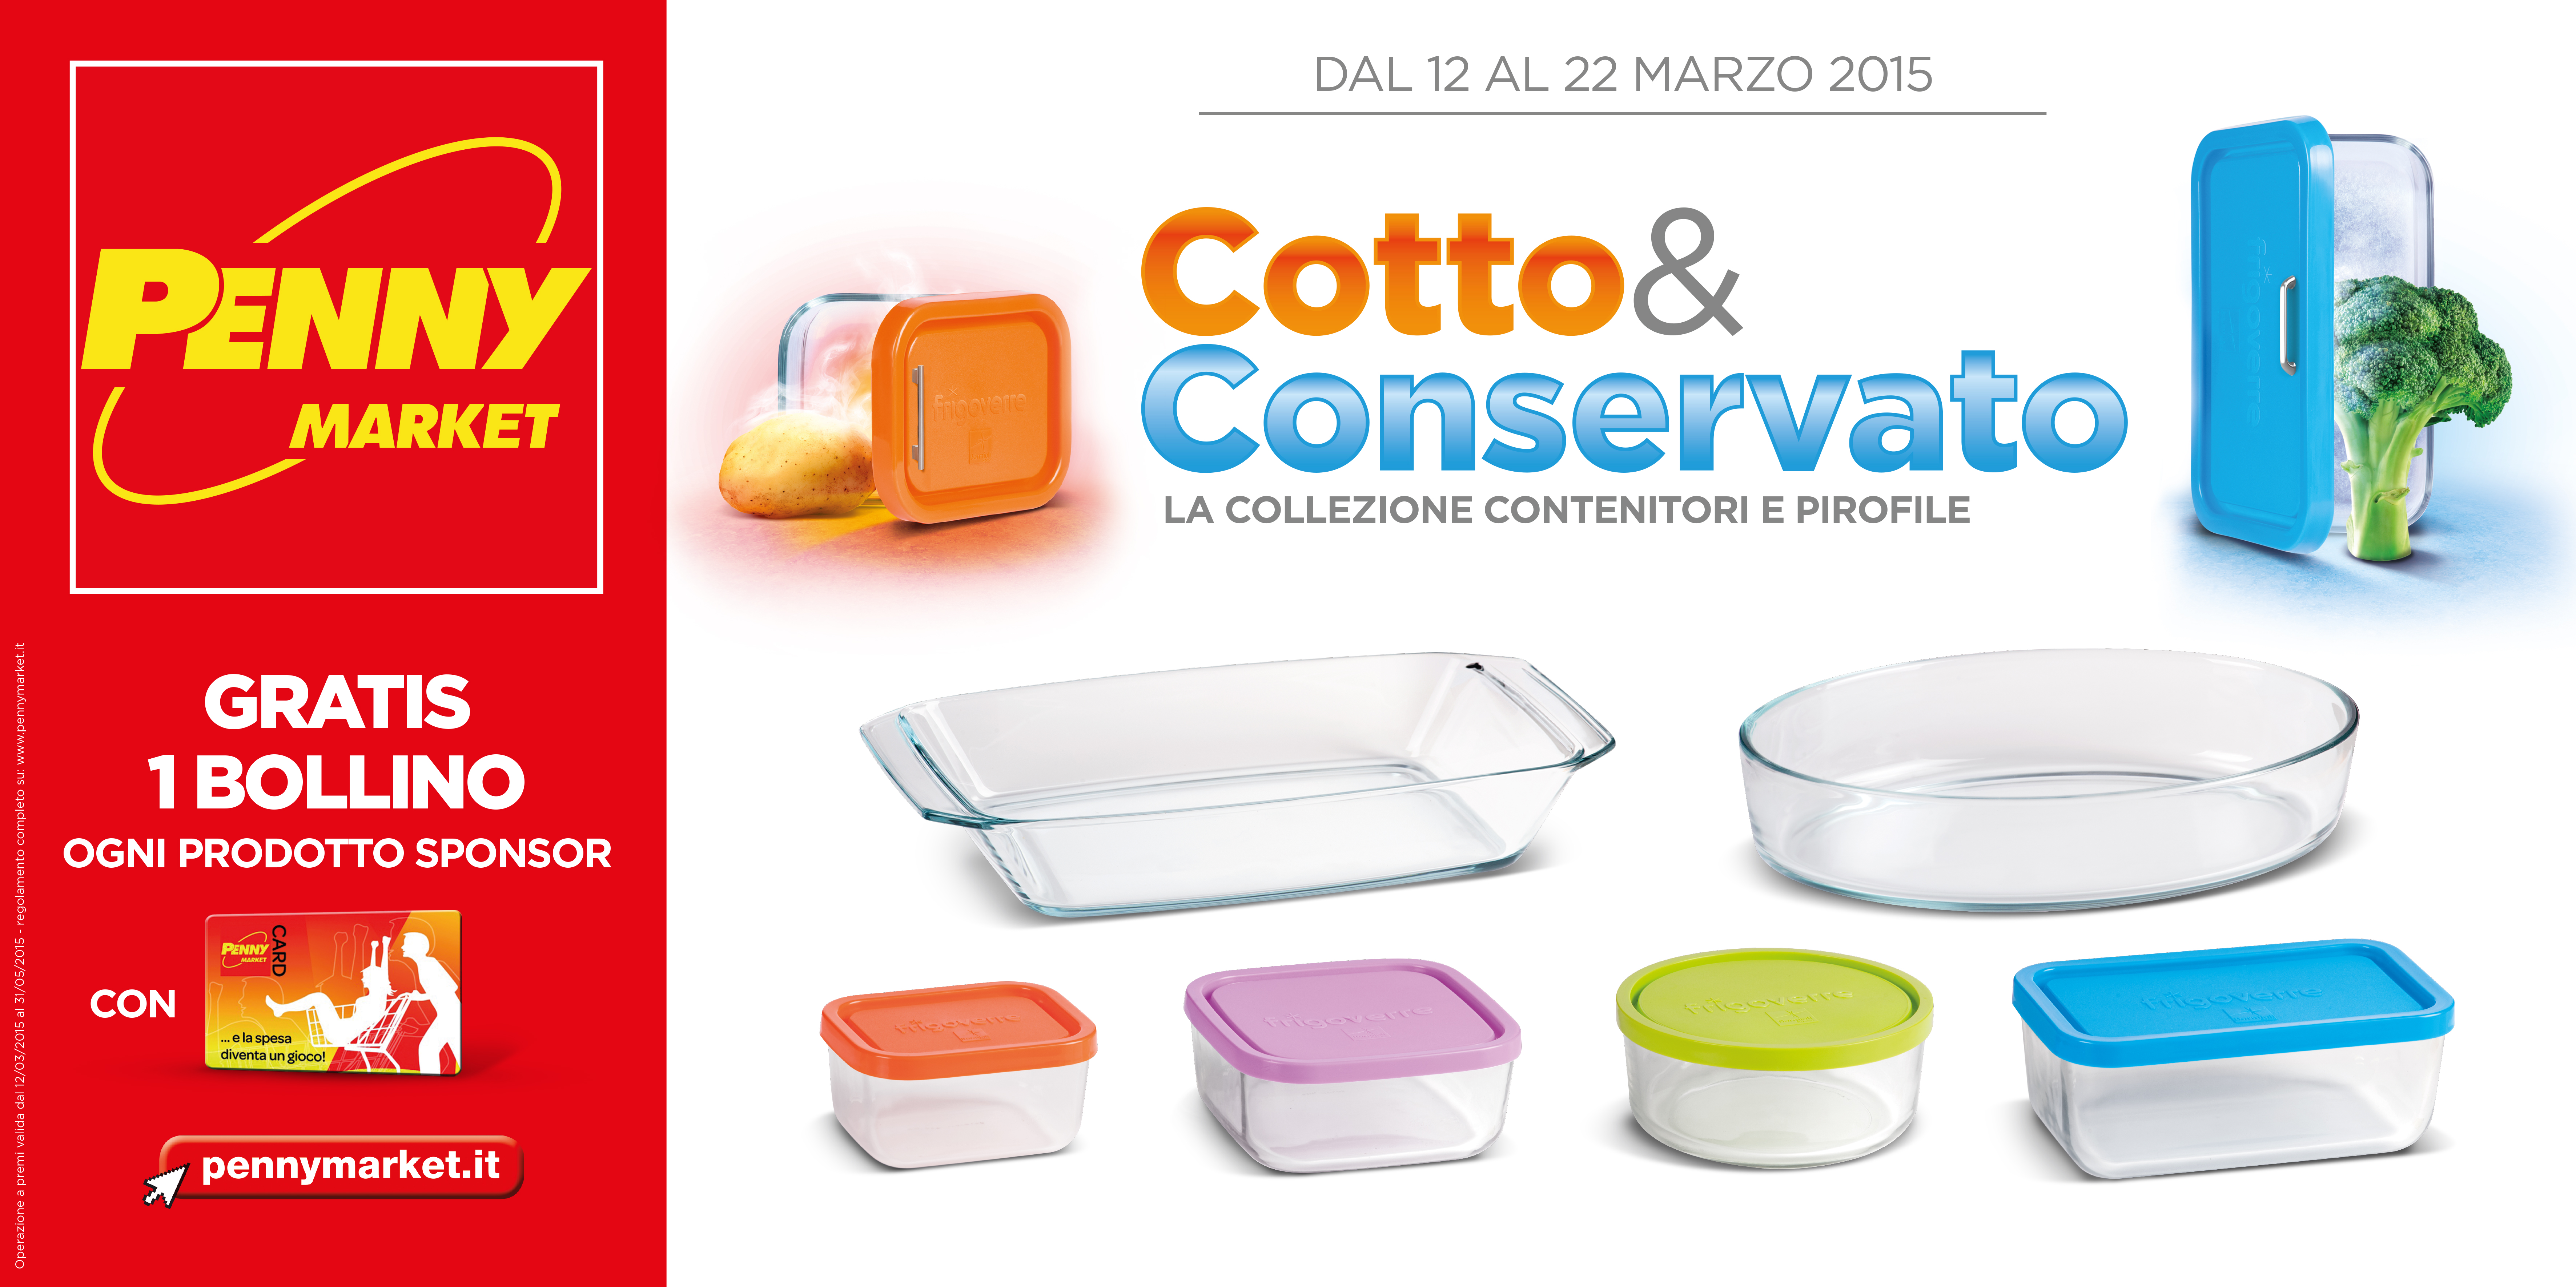 Cotto & Conservato